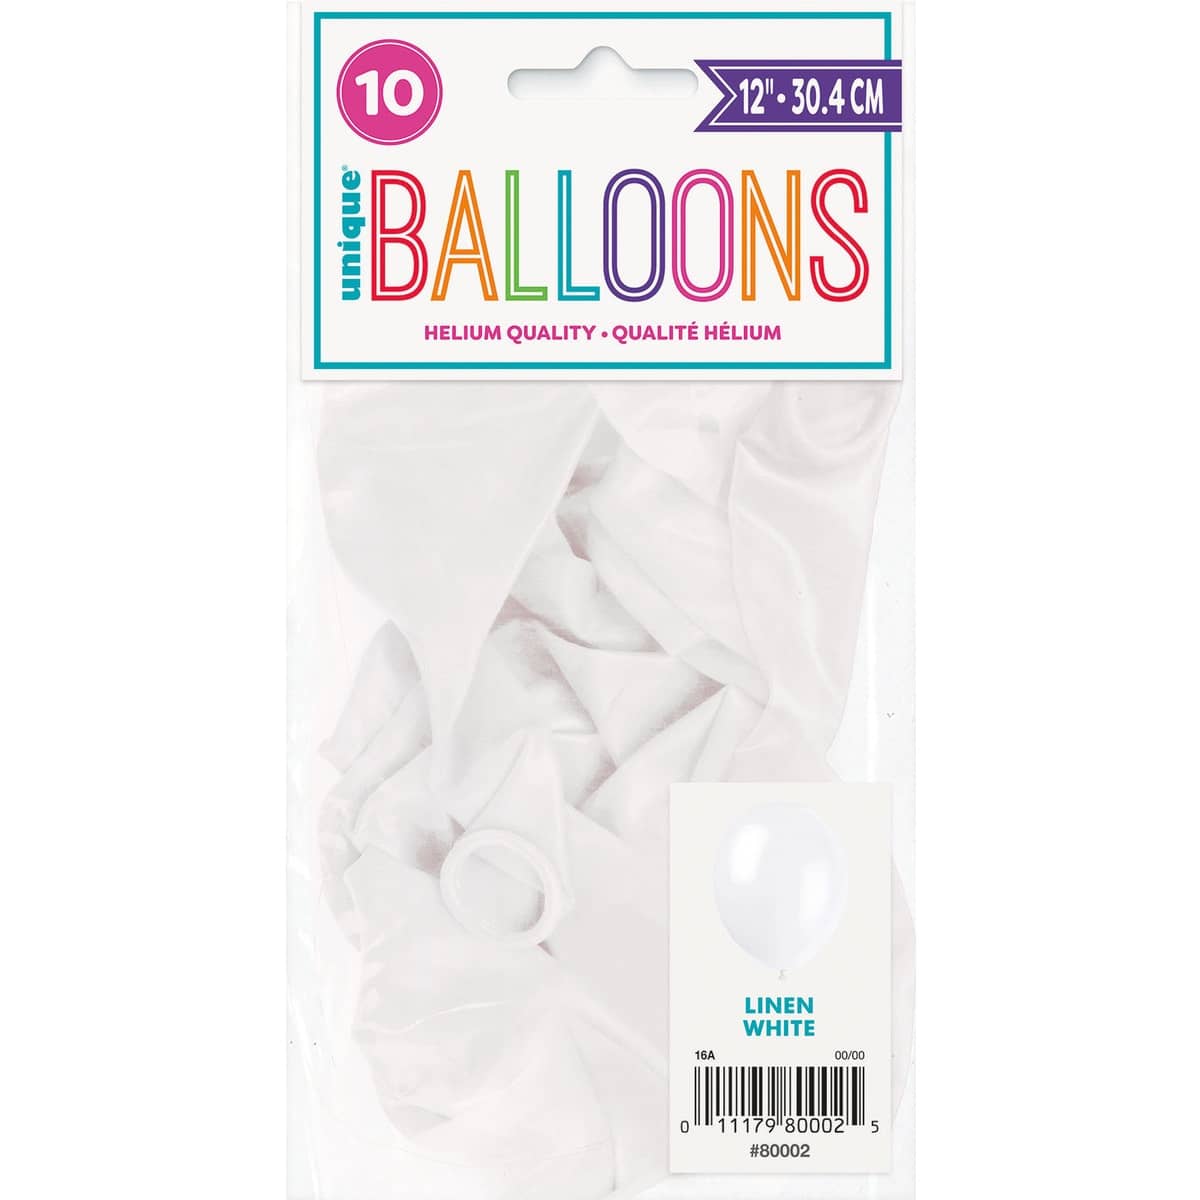 Premium Linen White Latex Balloons 30CM (12") 10pk Solid Colour - Party Owls